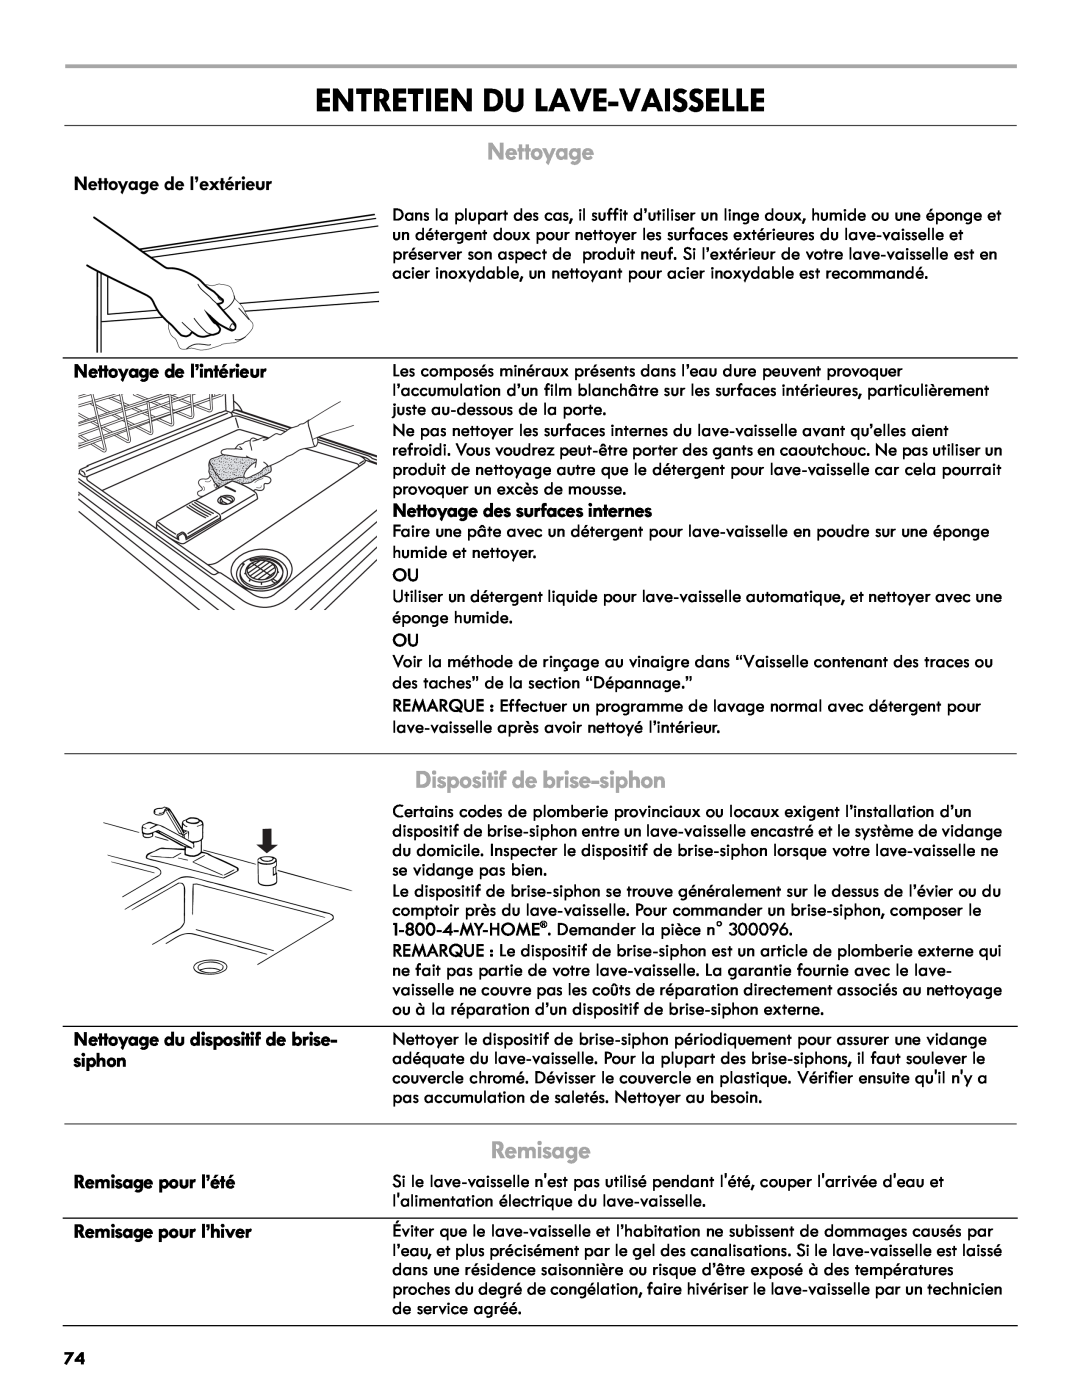 Kenmore 665.1327 manual Entretien Du Lave-Vaisselle, Dispositif de brise-siphon, Remisage, Nettoyage de l’extérieur 